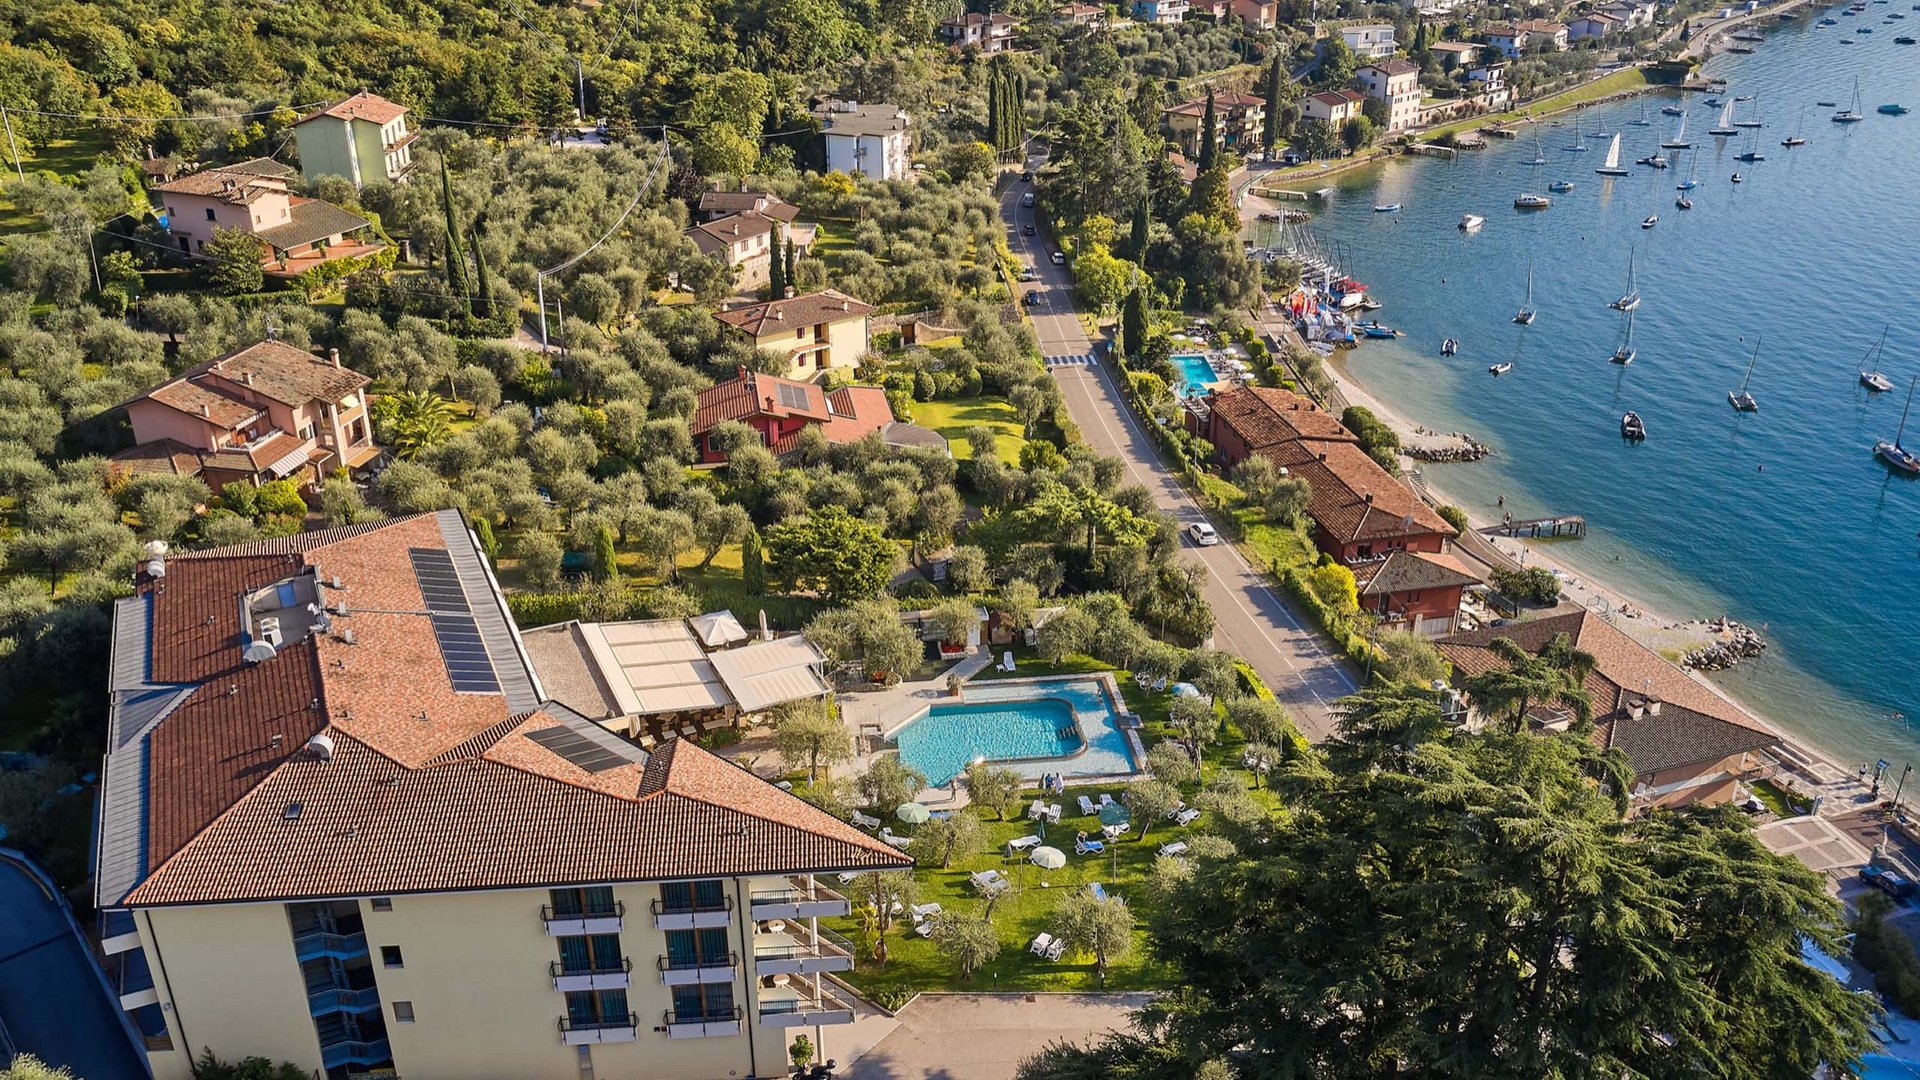 Hotel in Malcesine with spa: a dream come true